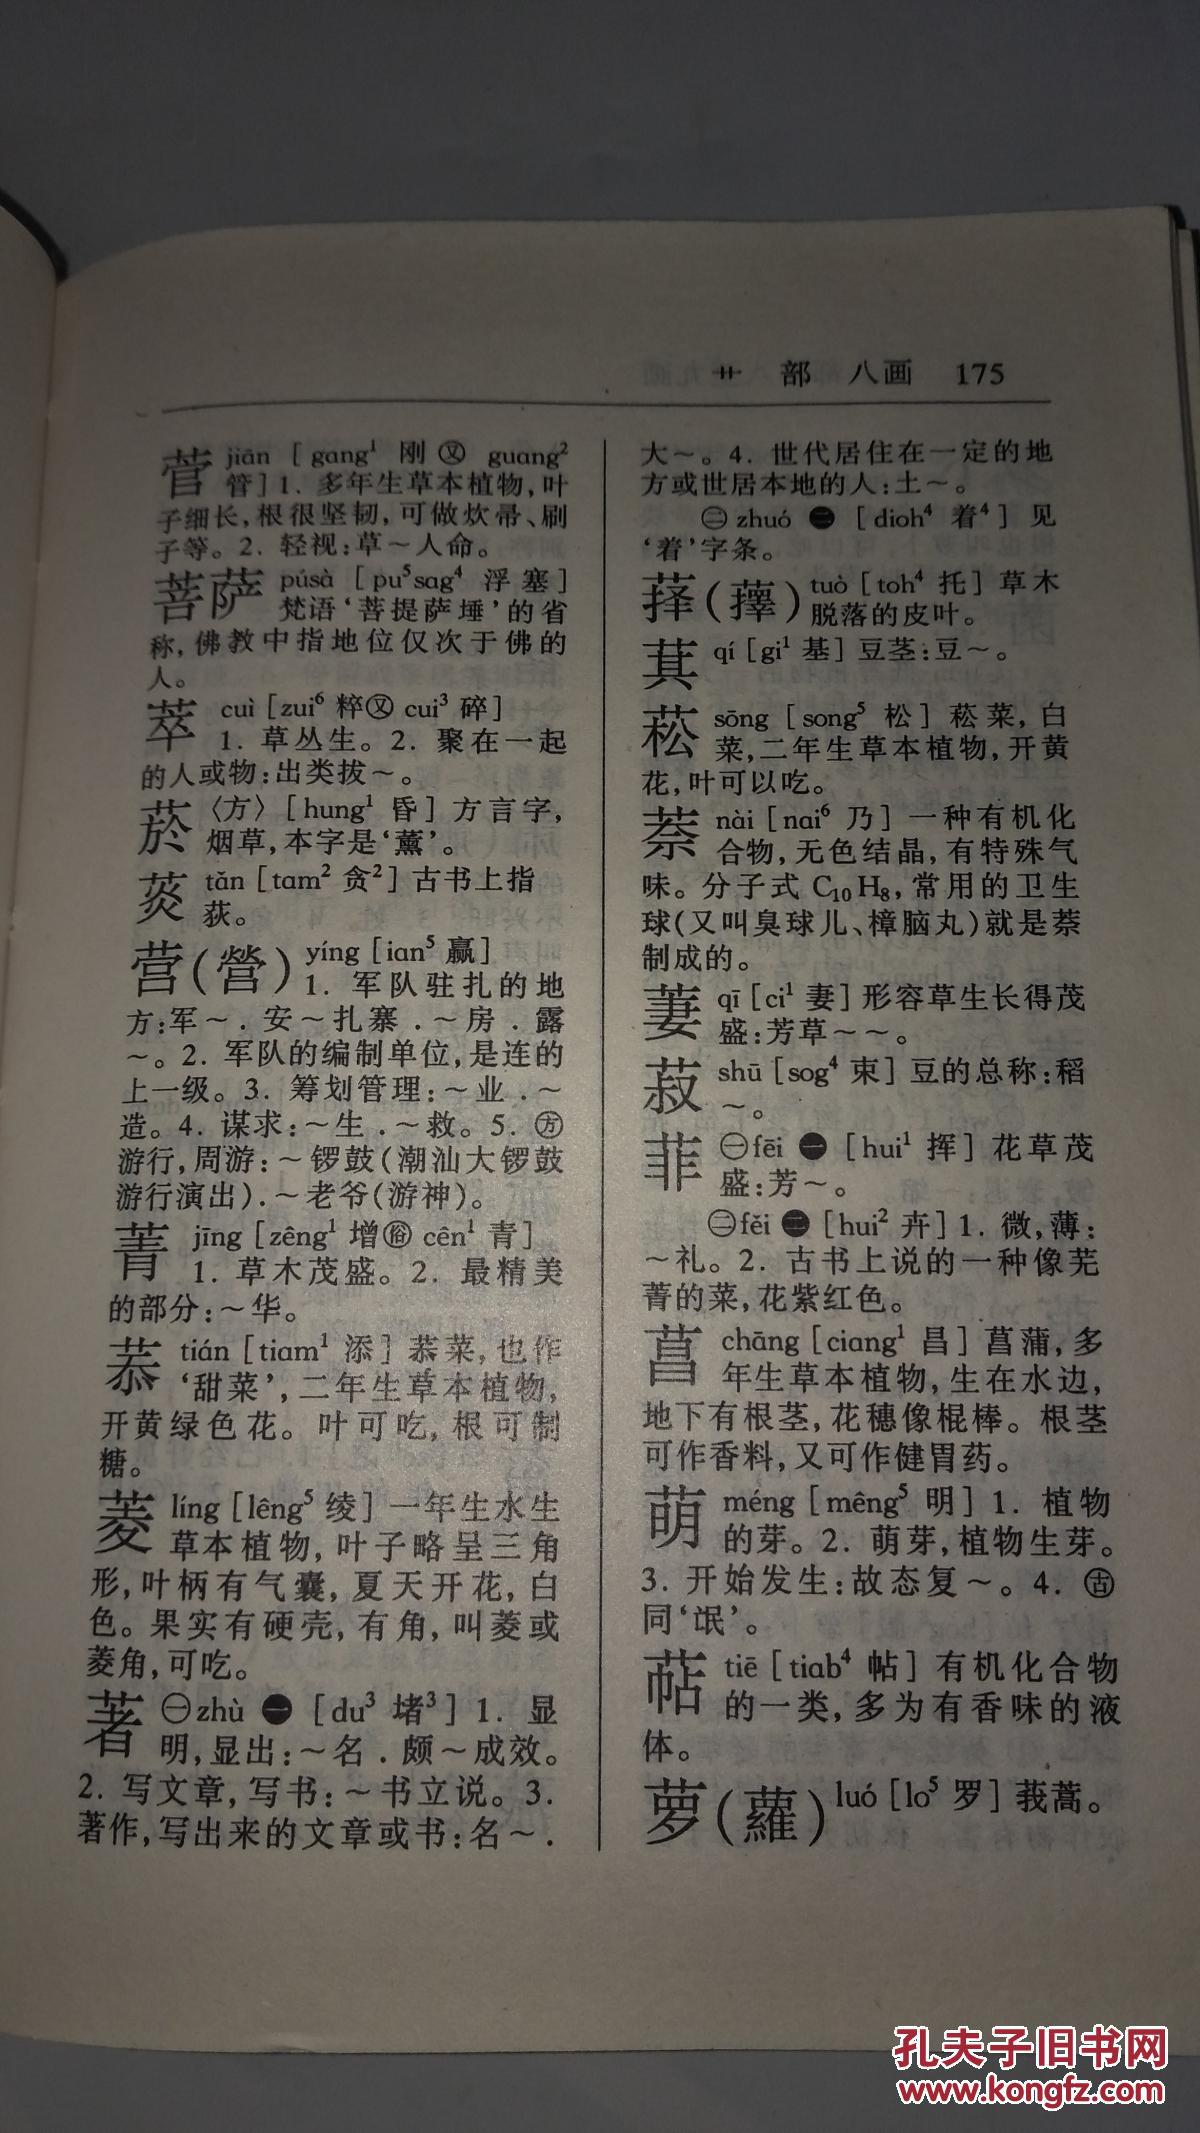 【图】《普通话对照 新编潮州音字典》精装本